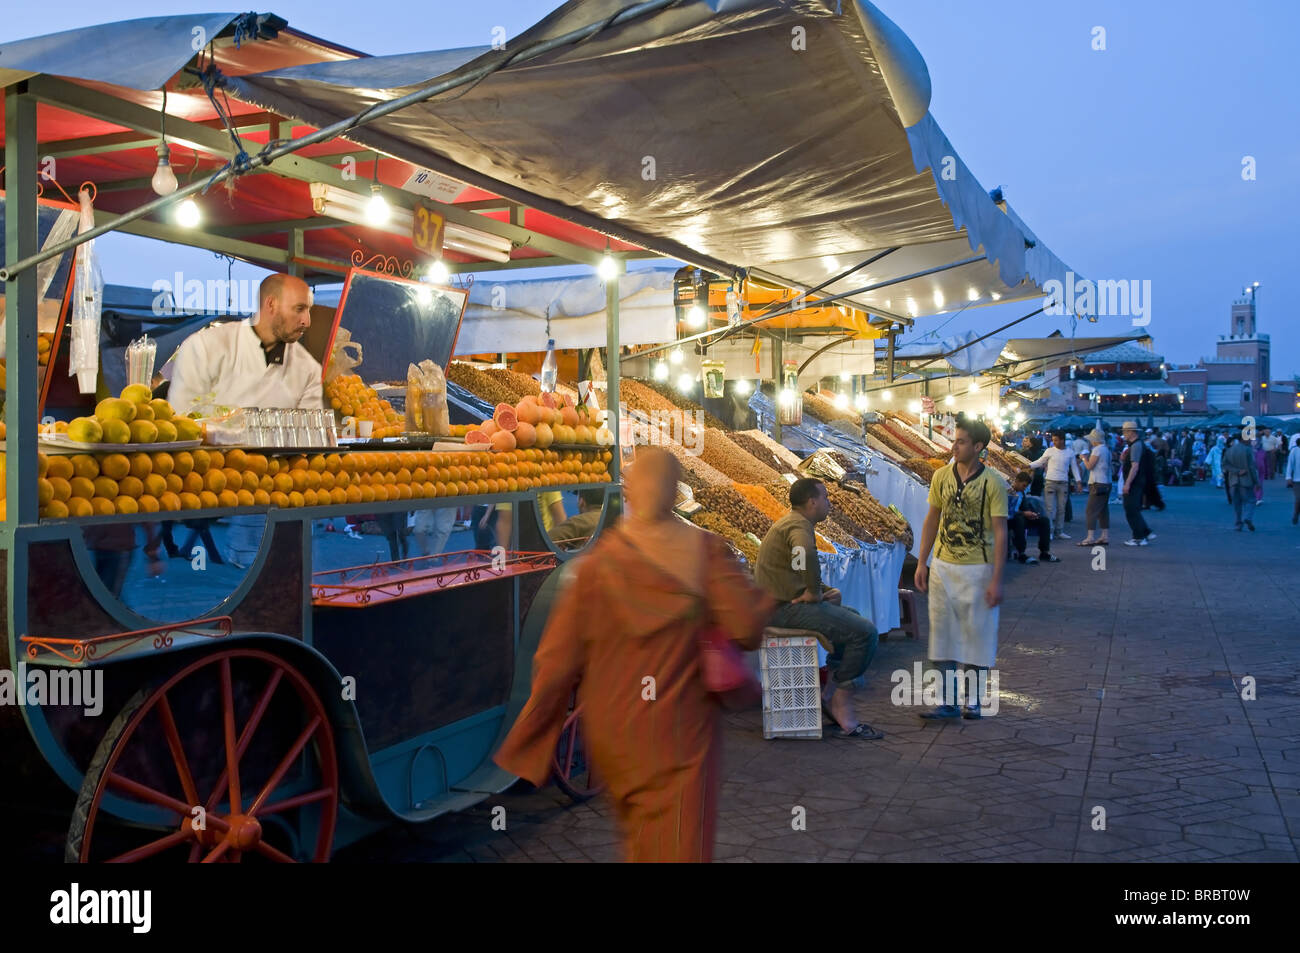 Orangensaft-Verkäufer, Place Djemaa El Fna (Djemaa El Fna), Marrakesch (Marrakech), Marokko, Nordafrika Stockfoto